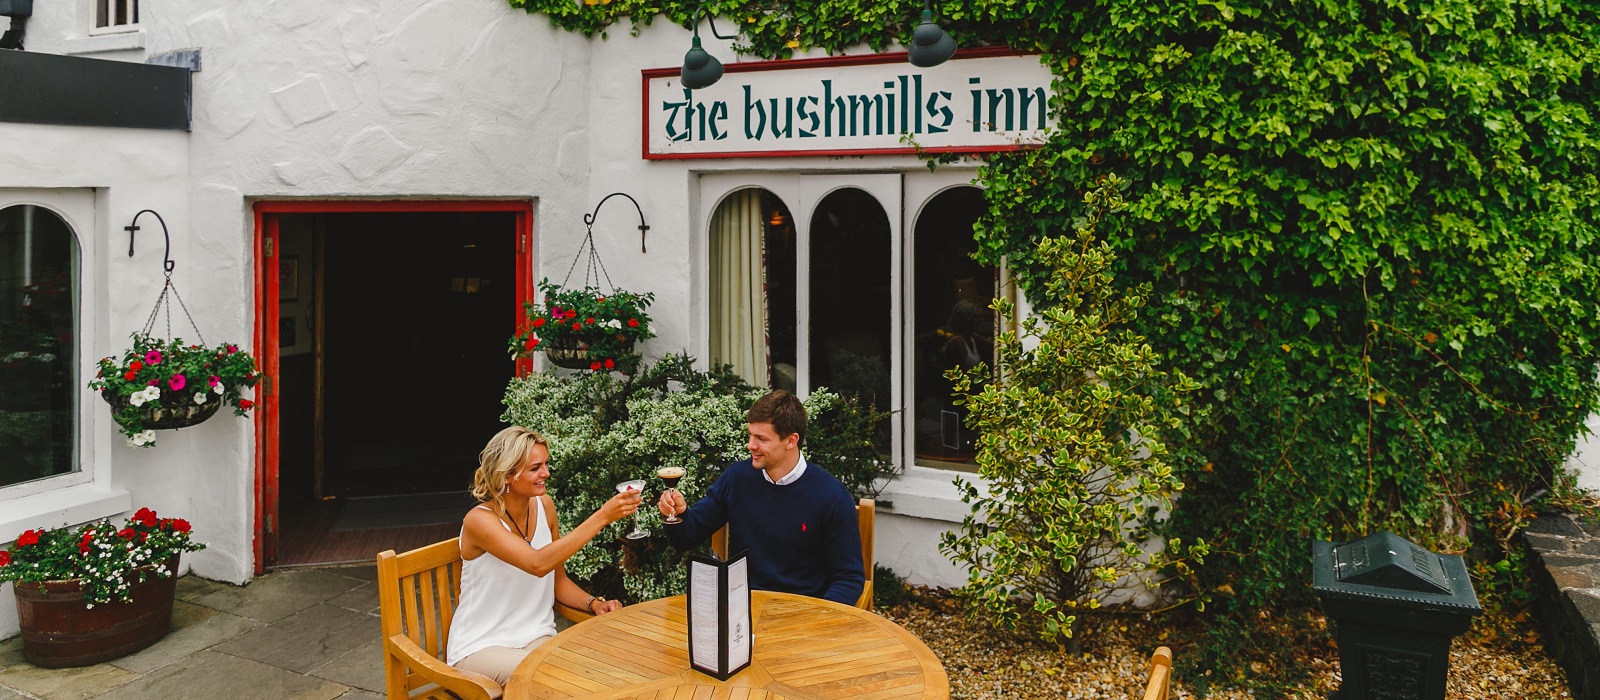 Bushmills Inn